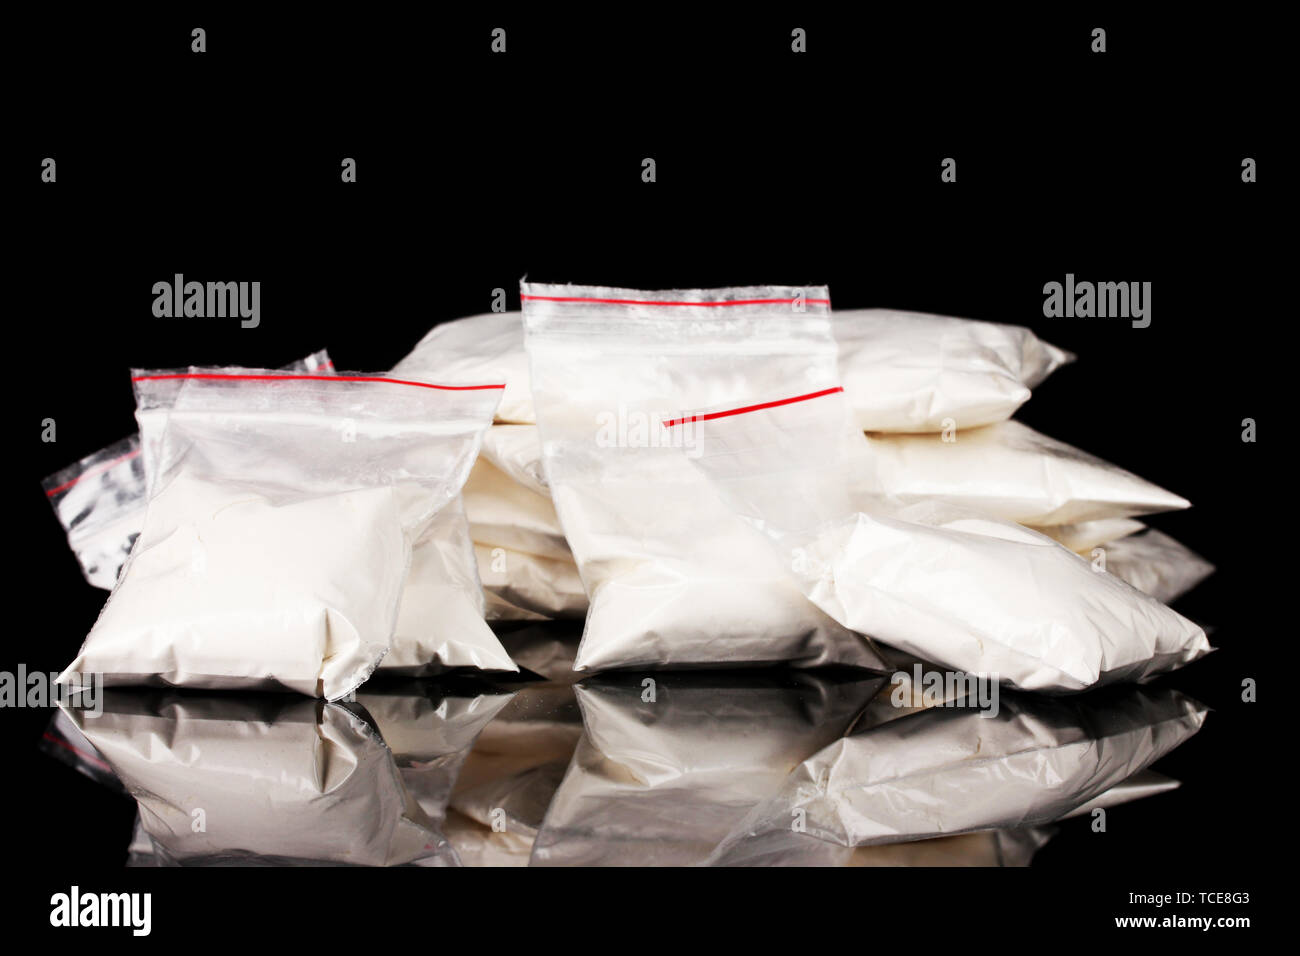 La cocaïne en paquets sur fond noir Banque D'Images